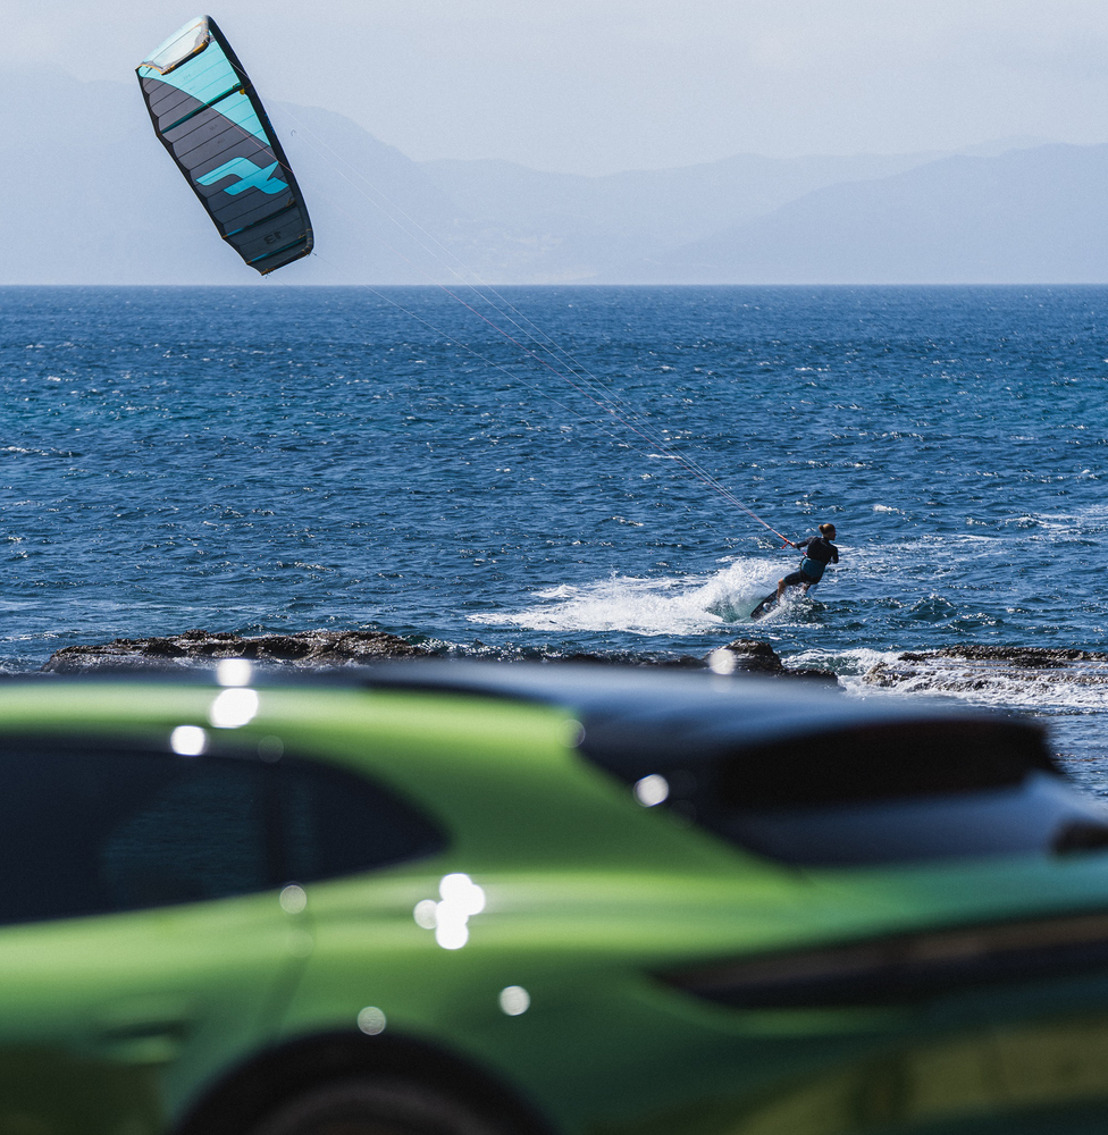 Porsche gets involved in kitesurfing